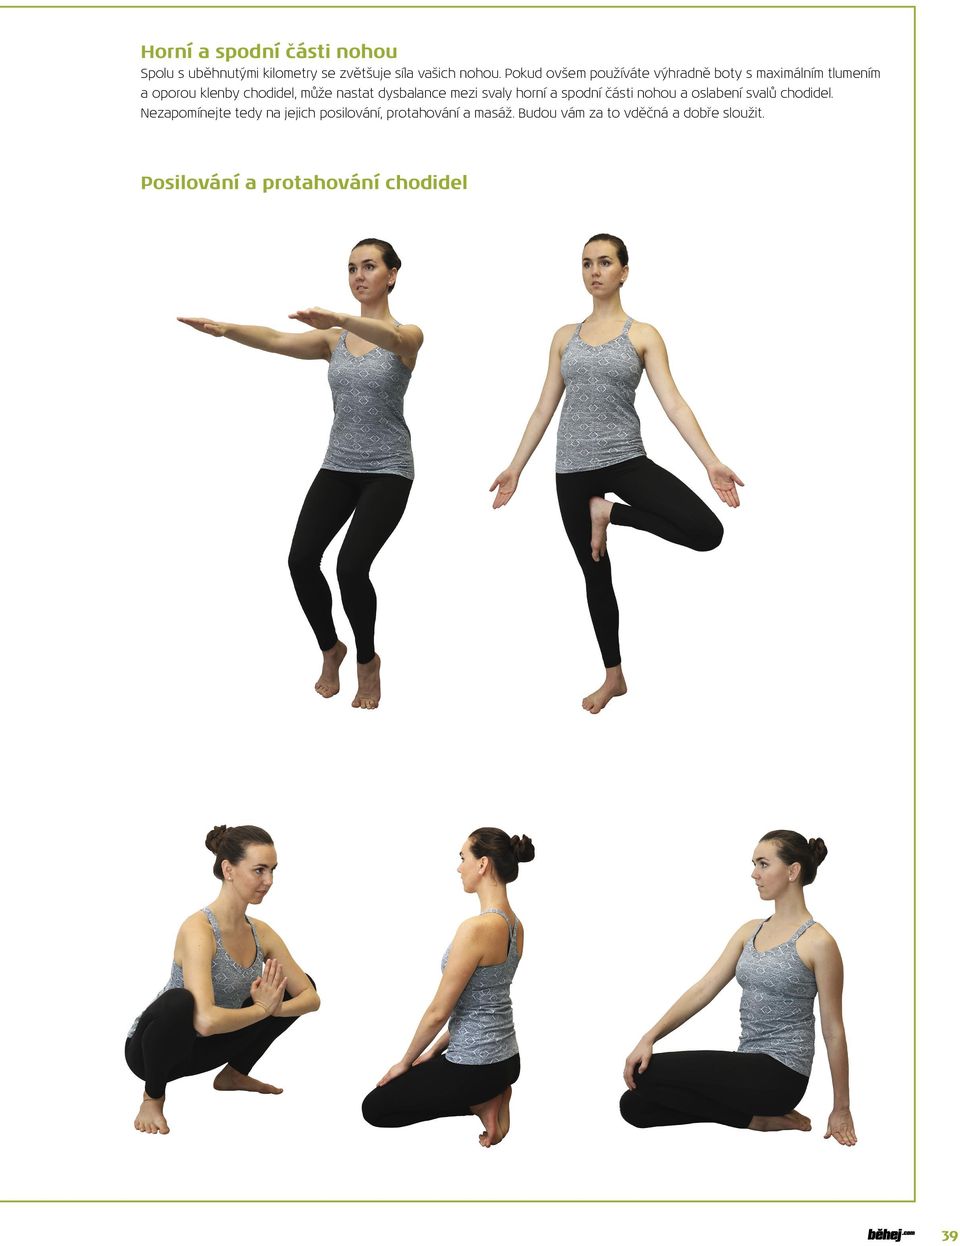 dysbalance mezi svaly horní a spodní části nohou a oslabení svalů chodidel.